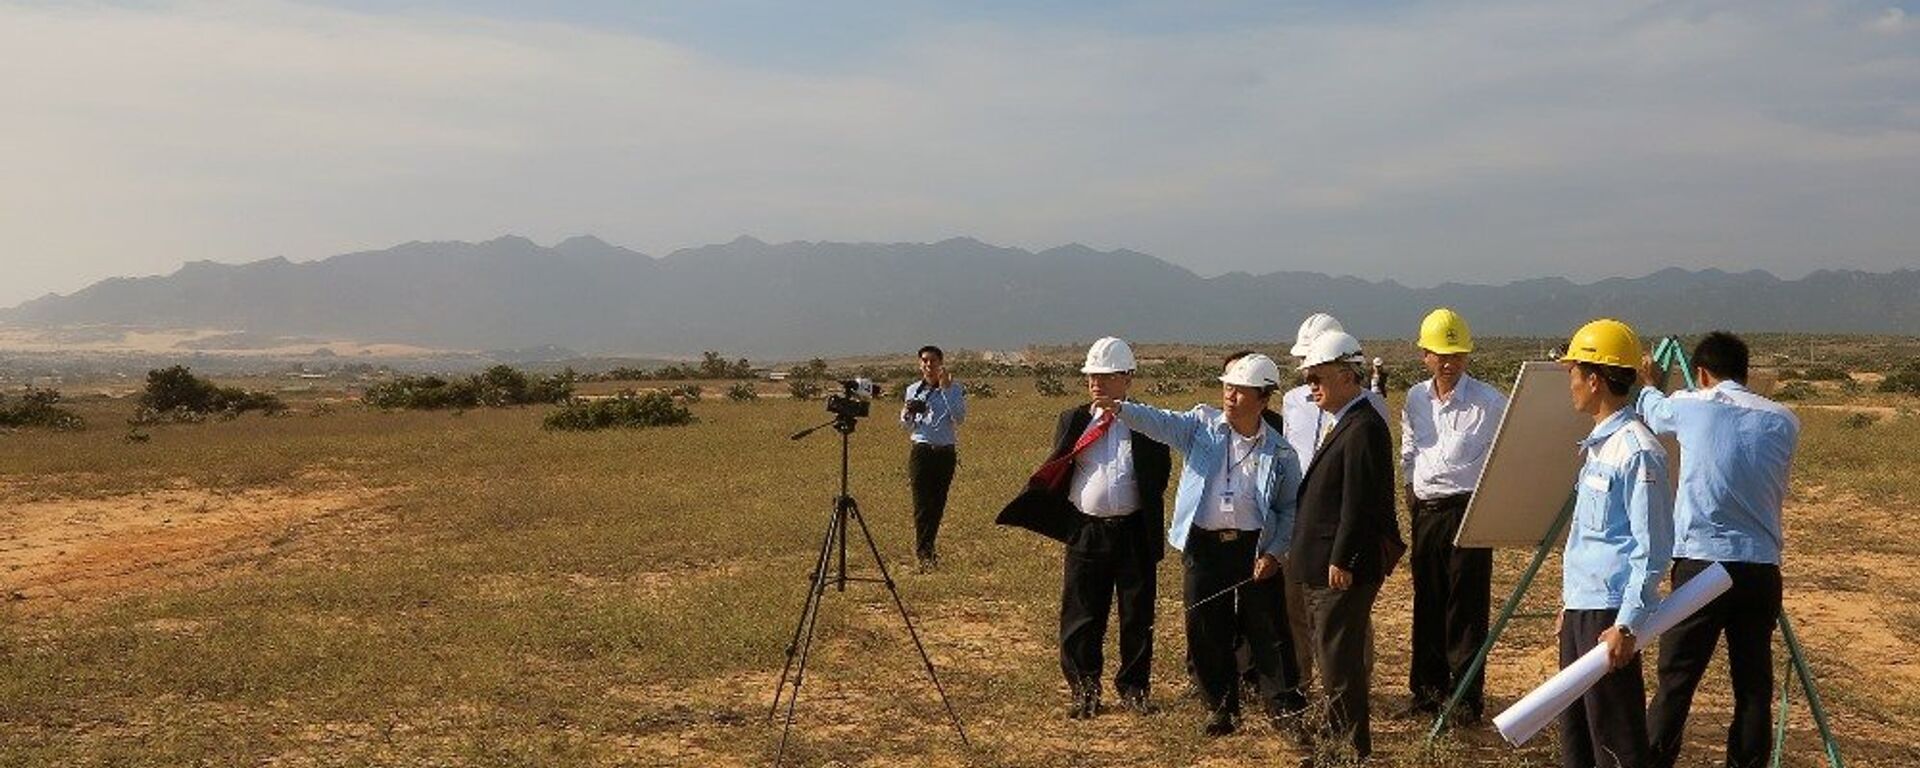 Ninh Thuân - nơi sẽ xây nhà máy điện hạt nhân đầu tiên của Việt Nam - Sputnik Việt Nam, 1920, 03.08.2015